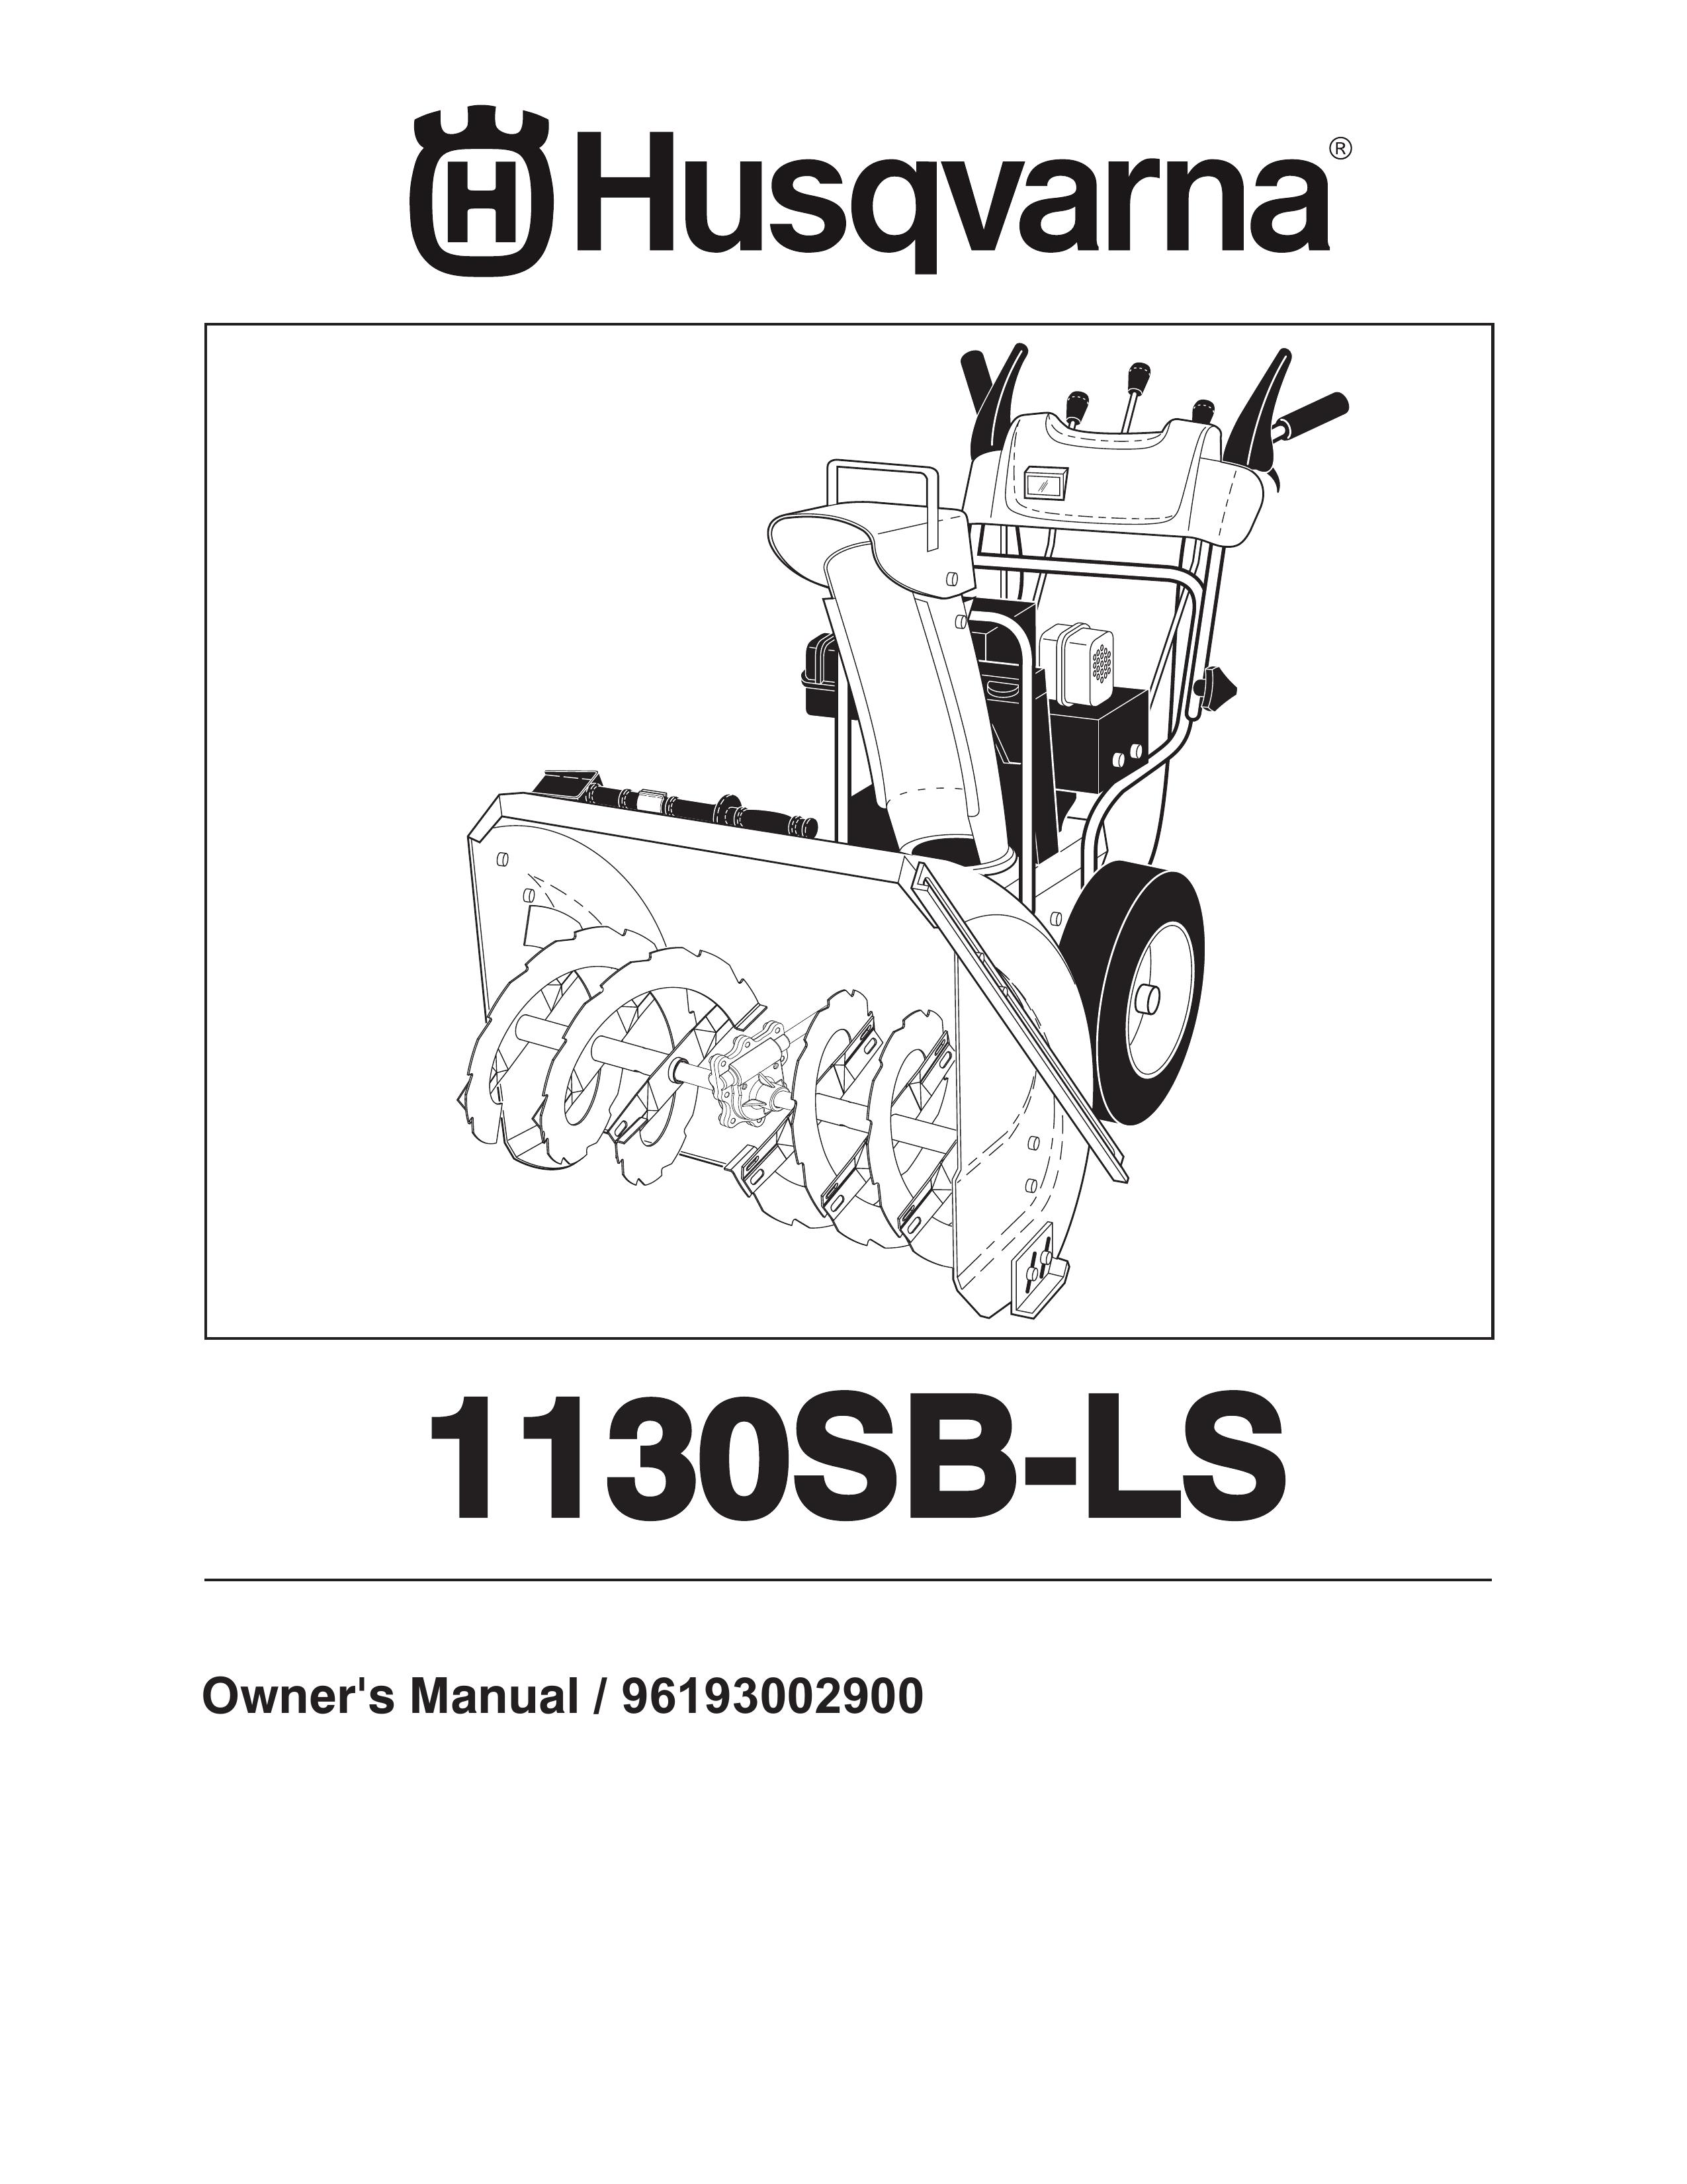 Husqvarna 1130SB-LS Snow Blower User Manual